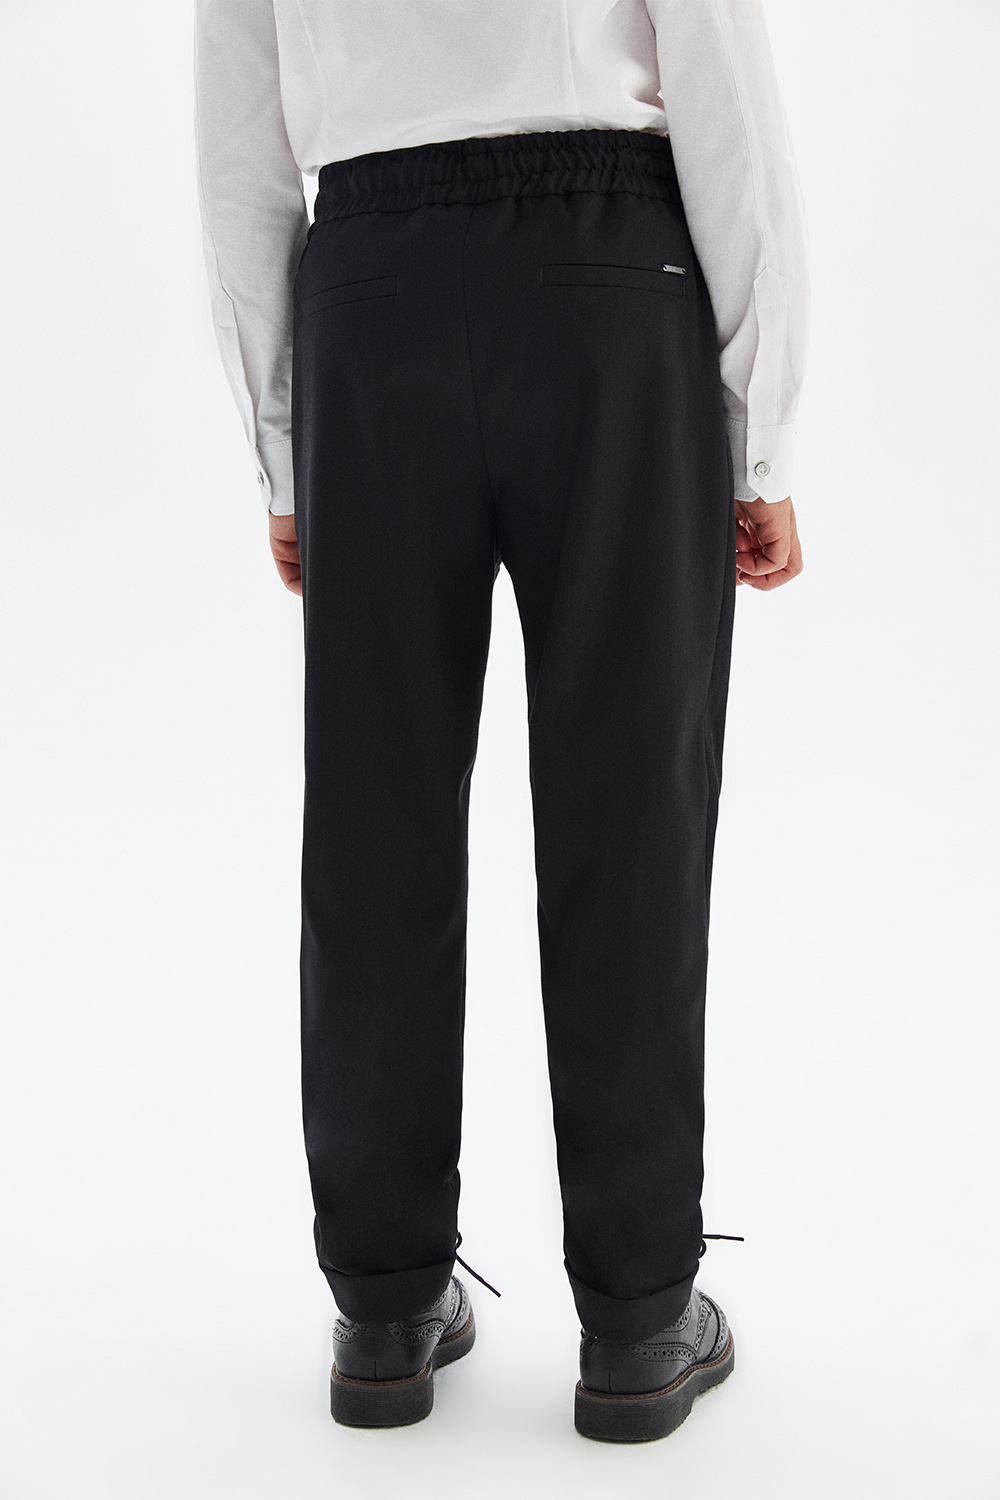 Костюмные брюки traveller с эластичной талией и шнурком (SSFSB-229-16011-101) Silver spoon